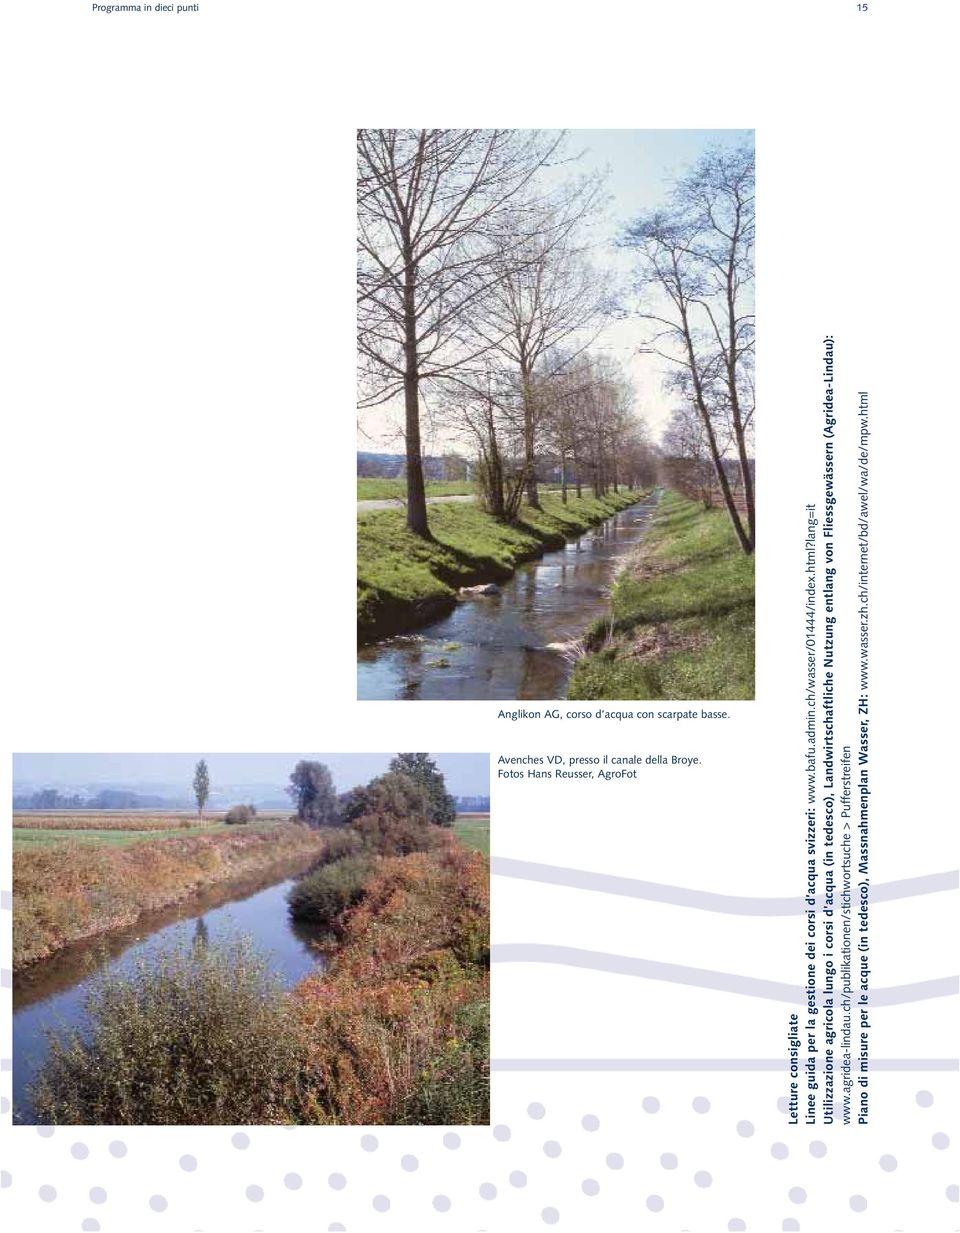 lang=it Utilizzazione agricola lungo i corsi d acqua (in tedesco), Landwirtschaftliche Nutzung entlang von Fliessgewässern (Agridea-Lindau): www.